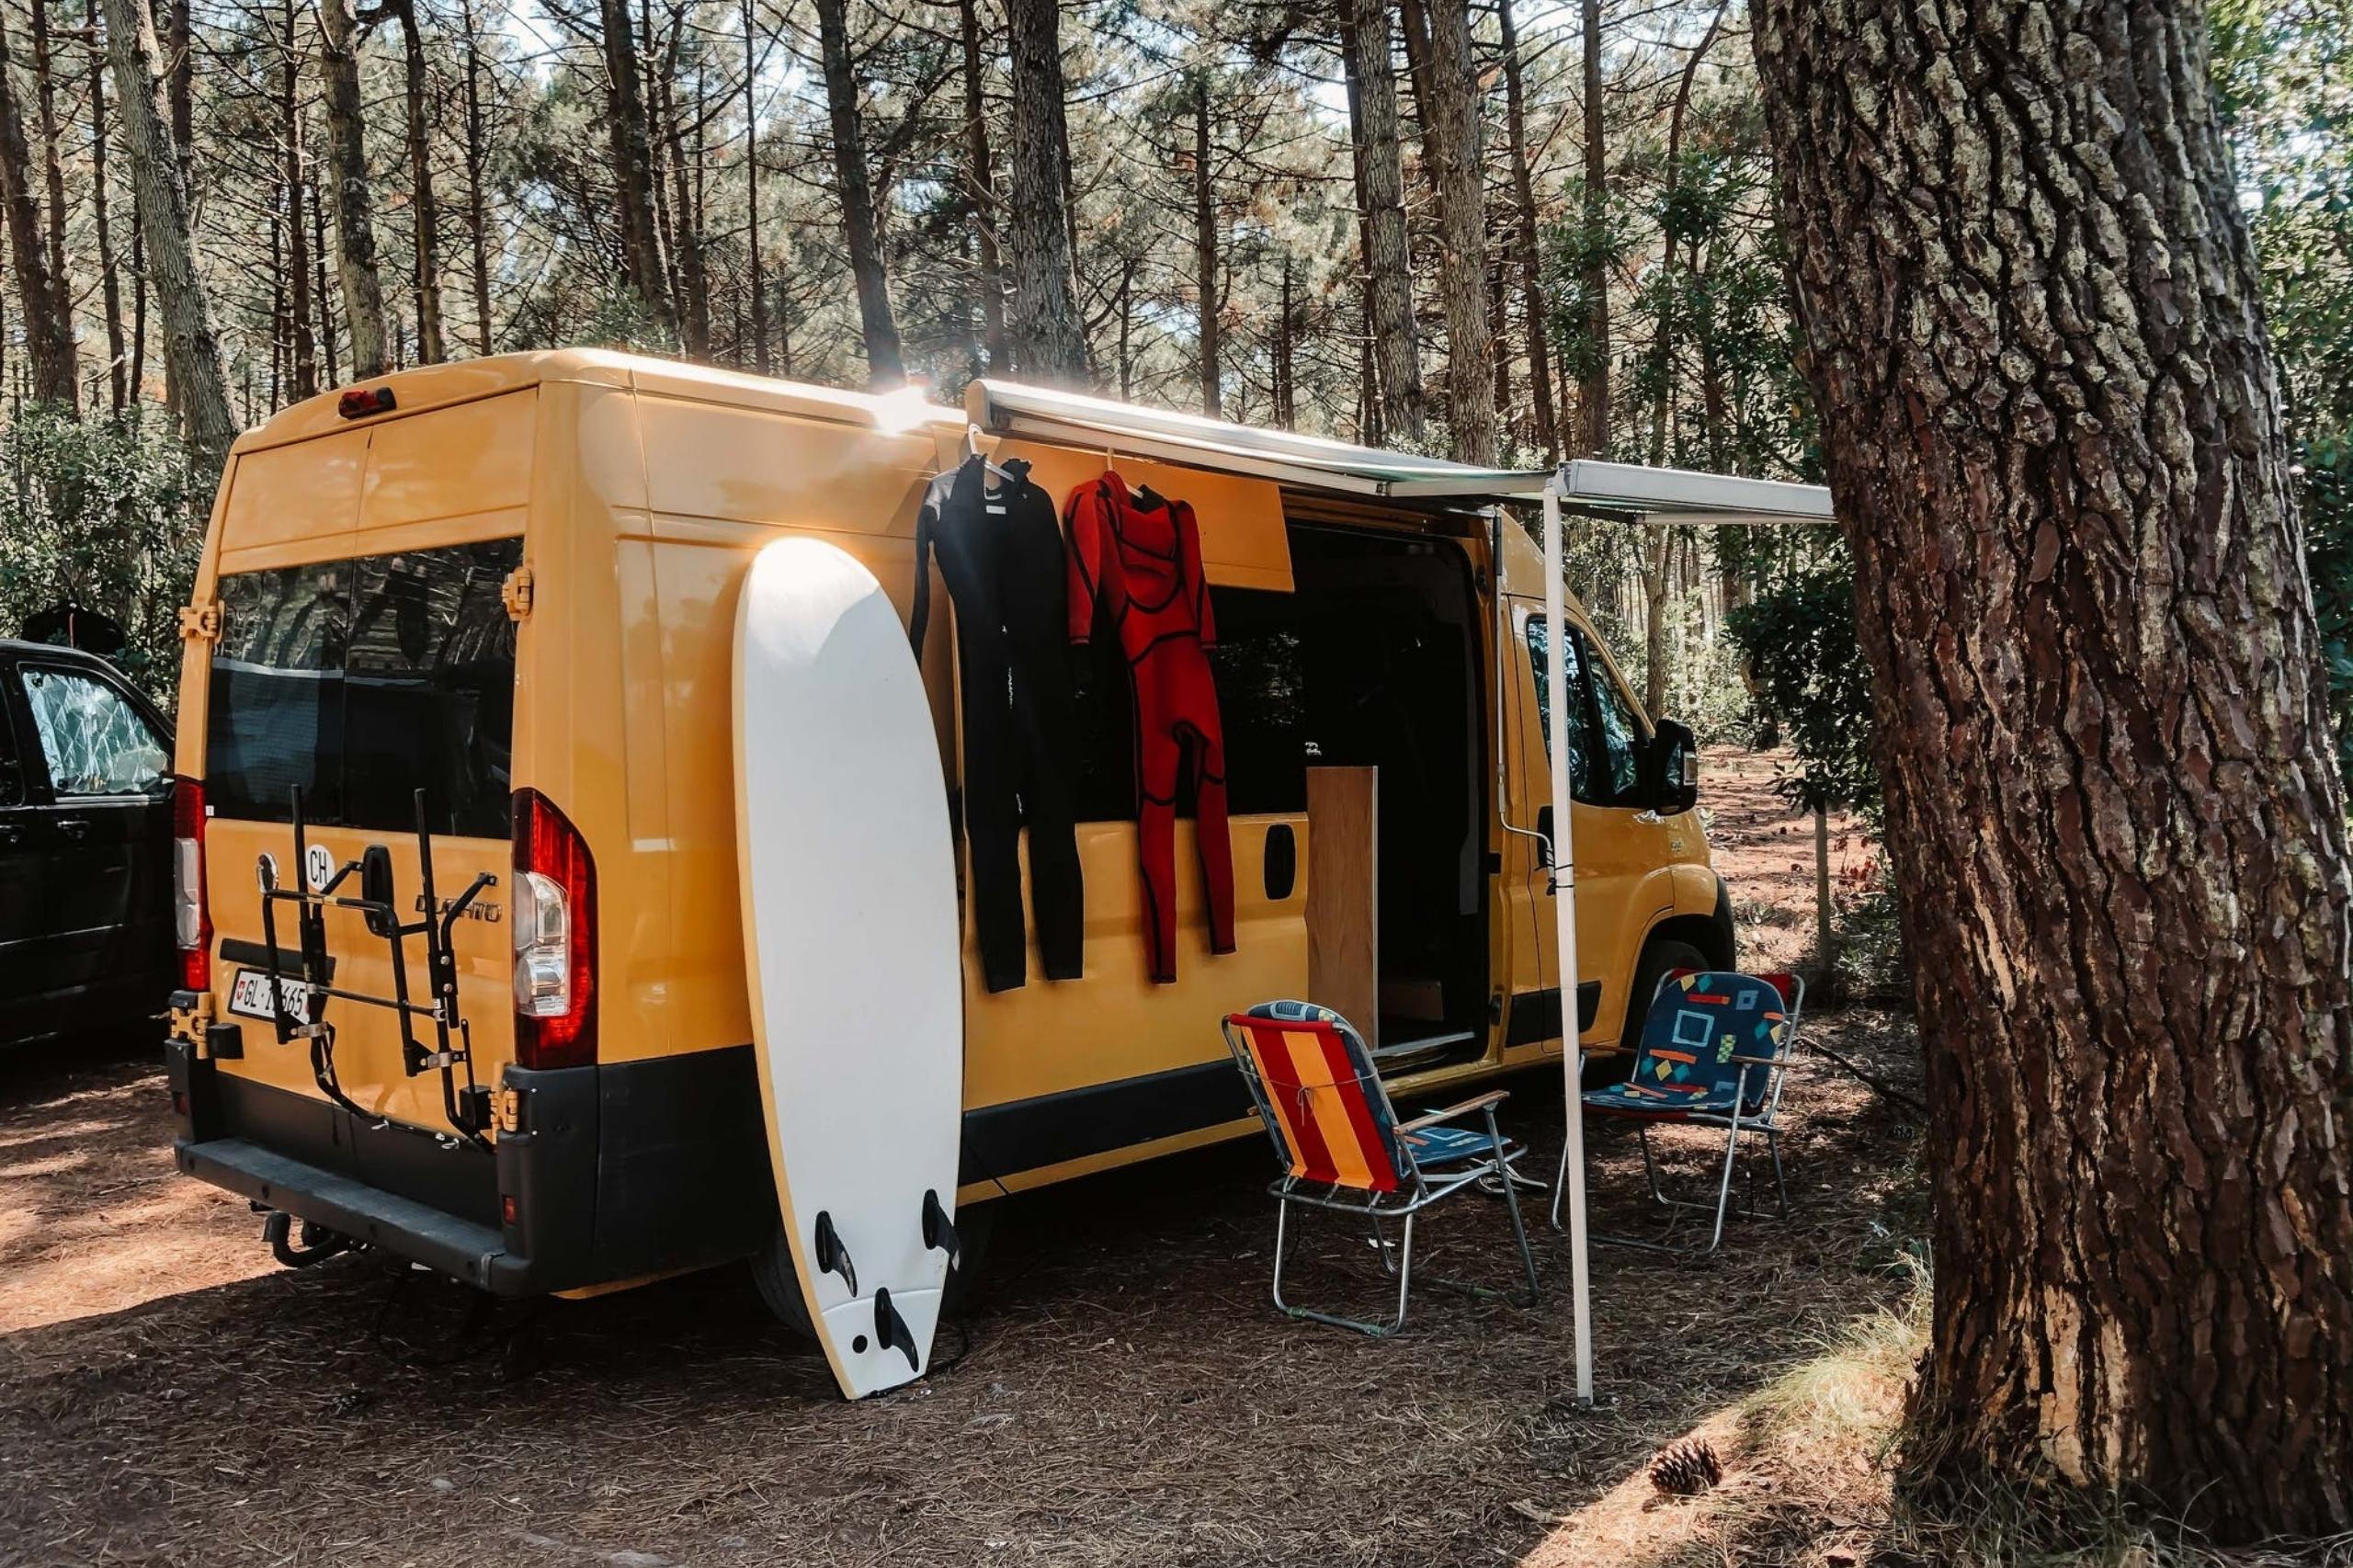 Neues Camping-Zubehör für mehr Komfort im Wohnwagen